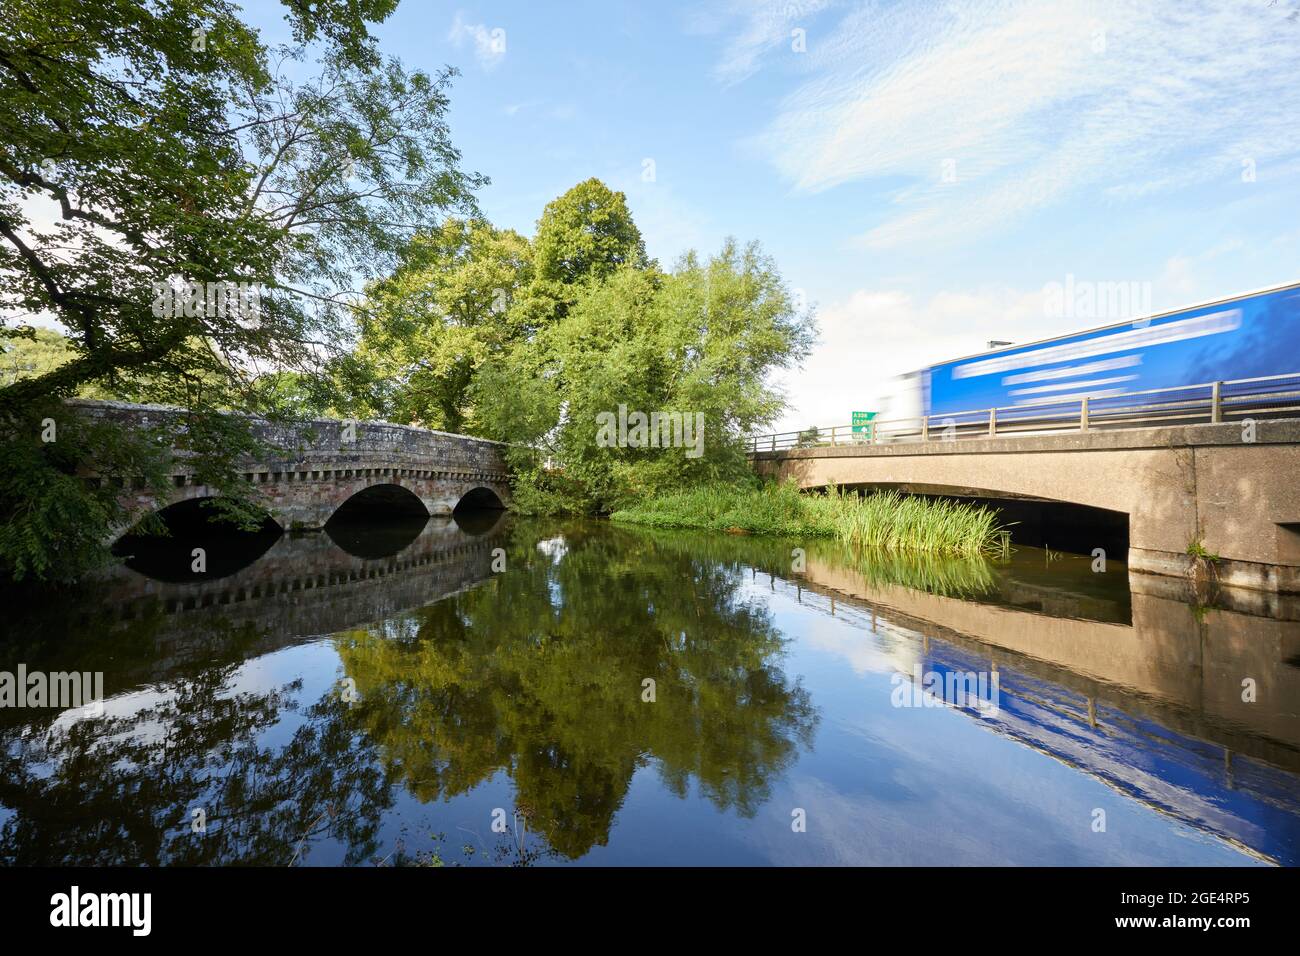 Ringwood, Reino Unido - 14 Aug 2021: Un puente de hormigón de C20th lleva tráfico más allá de la ciudad de Ringwood, Hampshire, evitando la ruta tradicional a través de un puente clasificado de tres arcos de Grado II que data de la C 19. Foto de stock